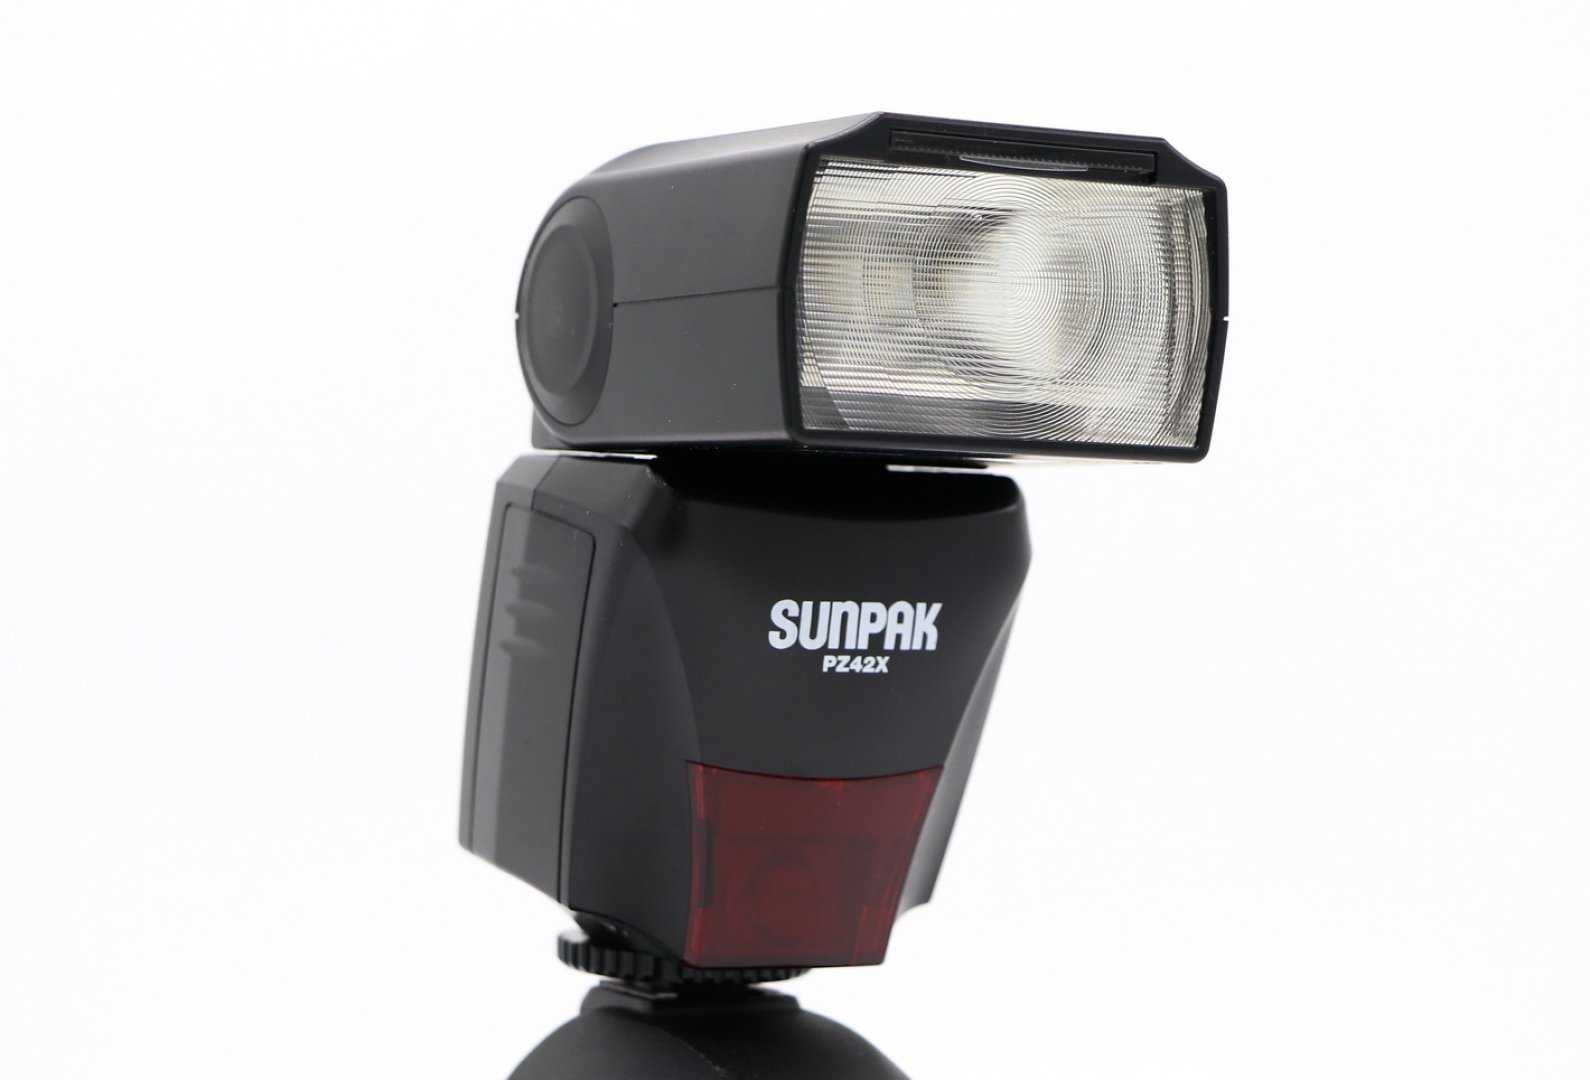 Sunpak pz42x digital flash for canon купить - ростов-на-дону по акционной цене , отзывы и обзоры.